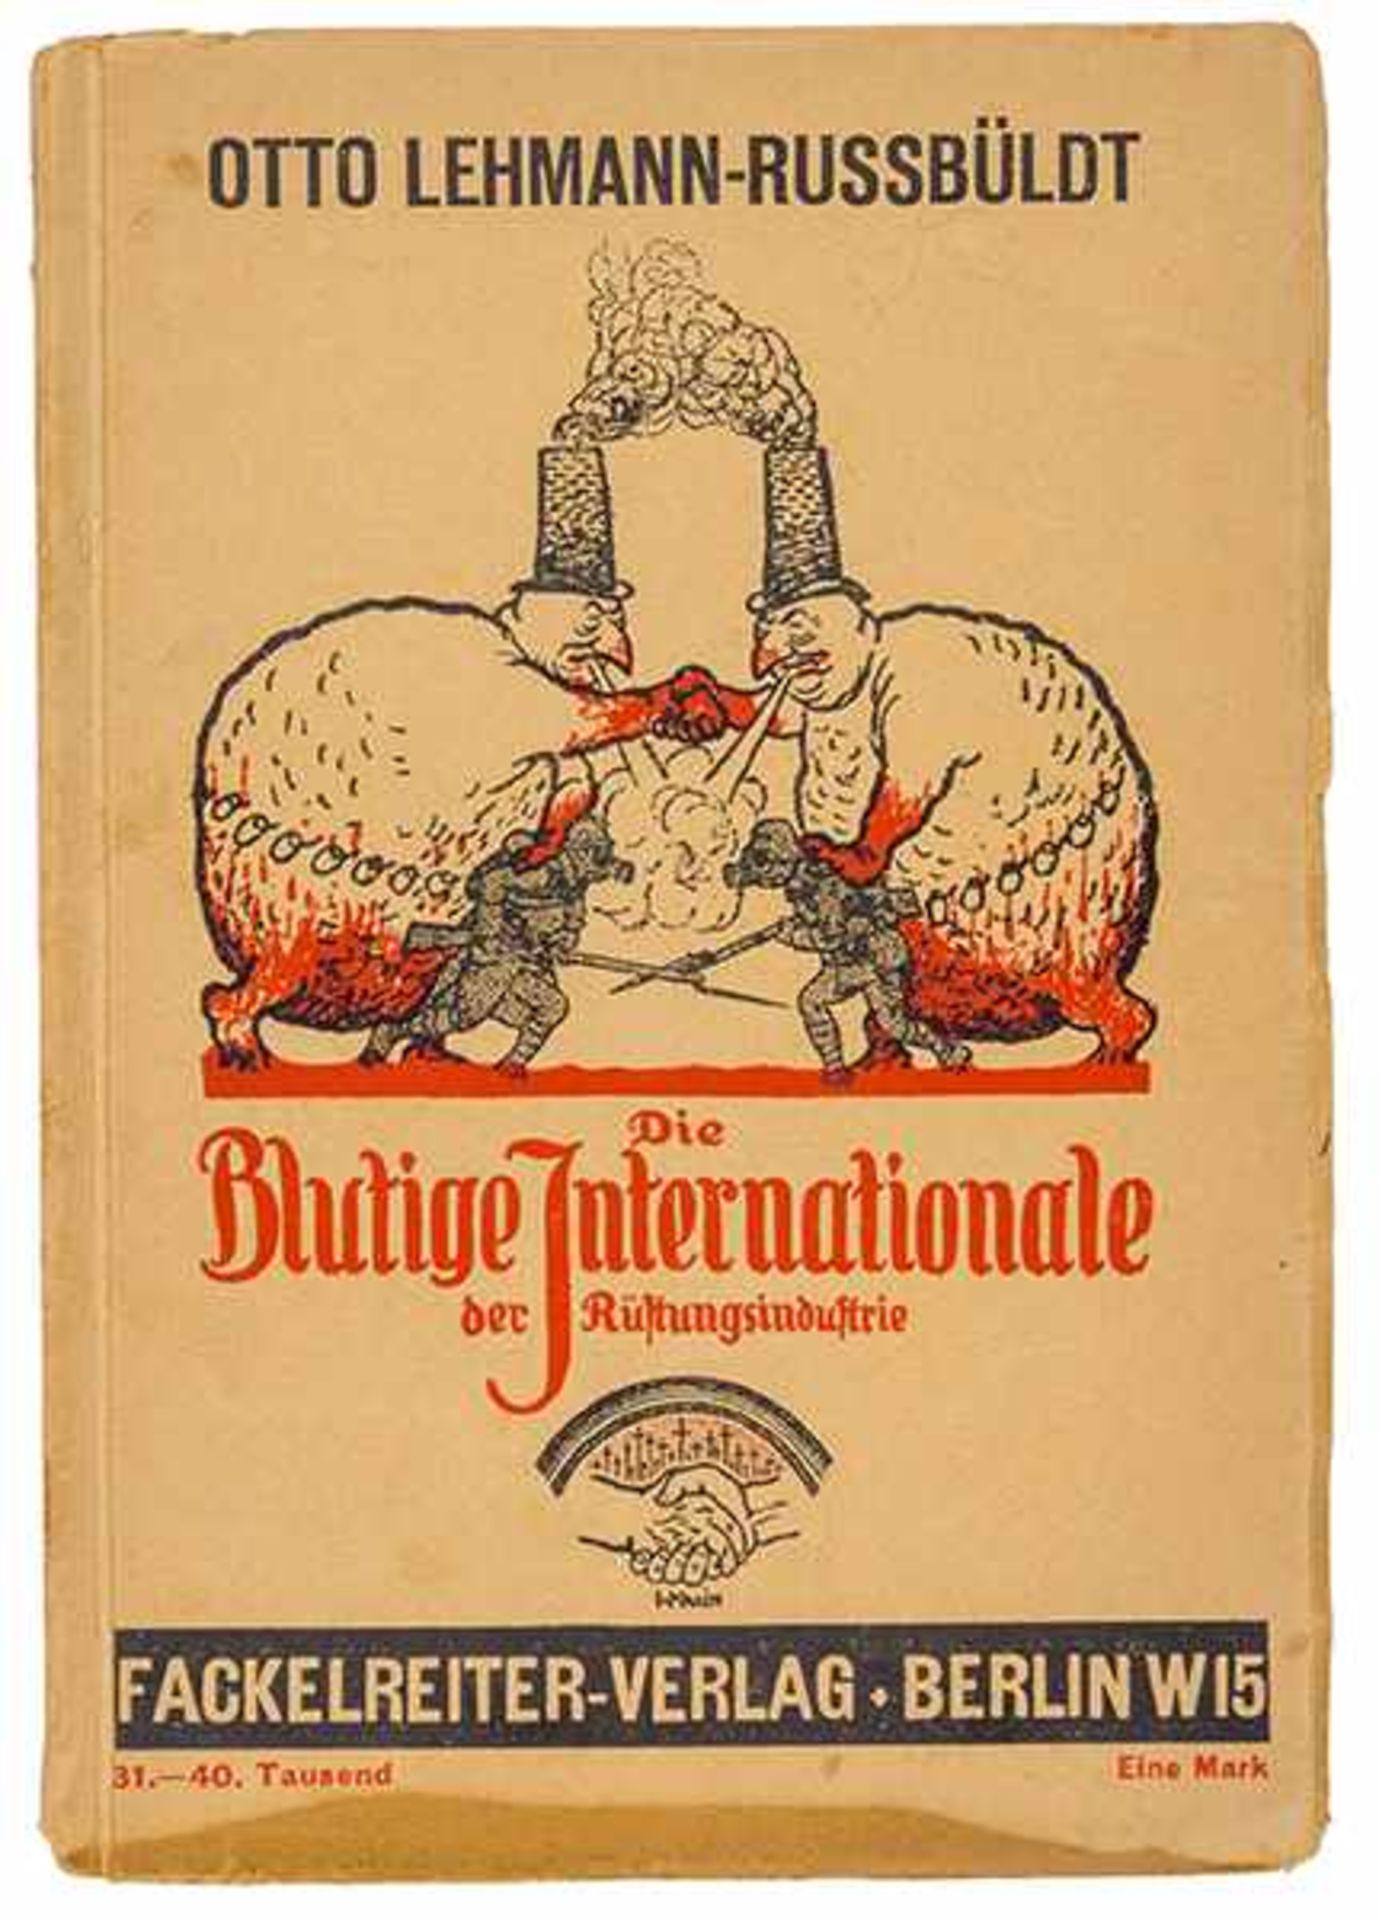 Gegenkultur vor 1945 - - Sammlung von 17 antimilitaristischen und pazifistischen Schriften.